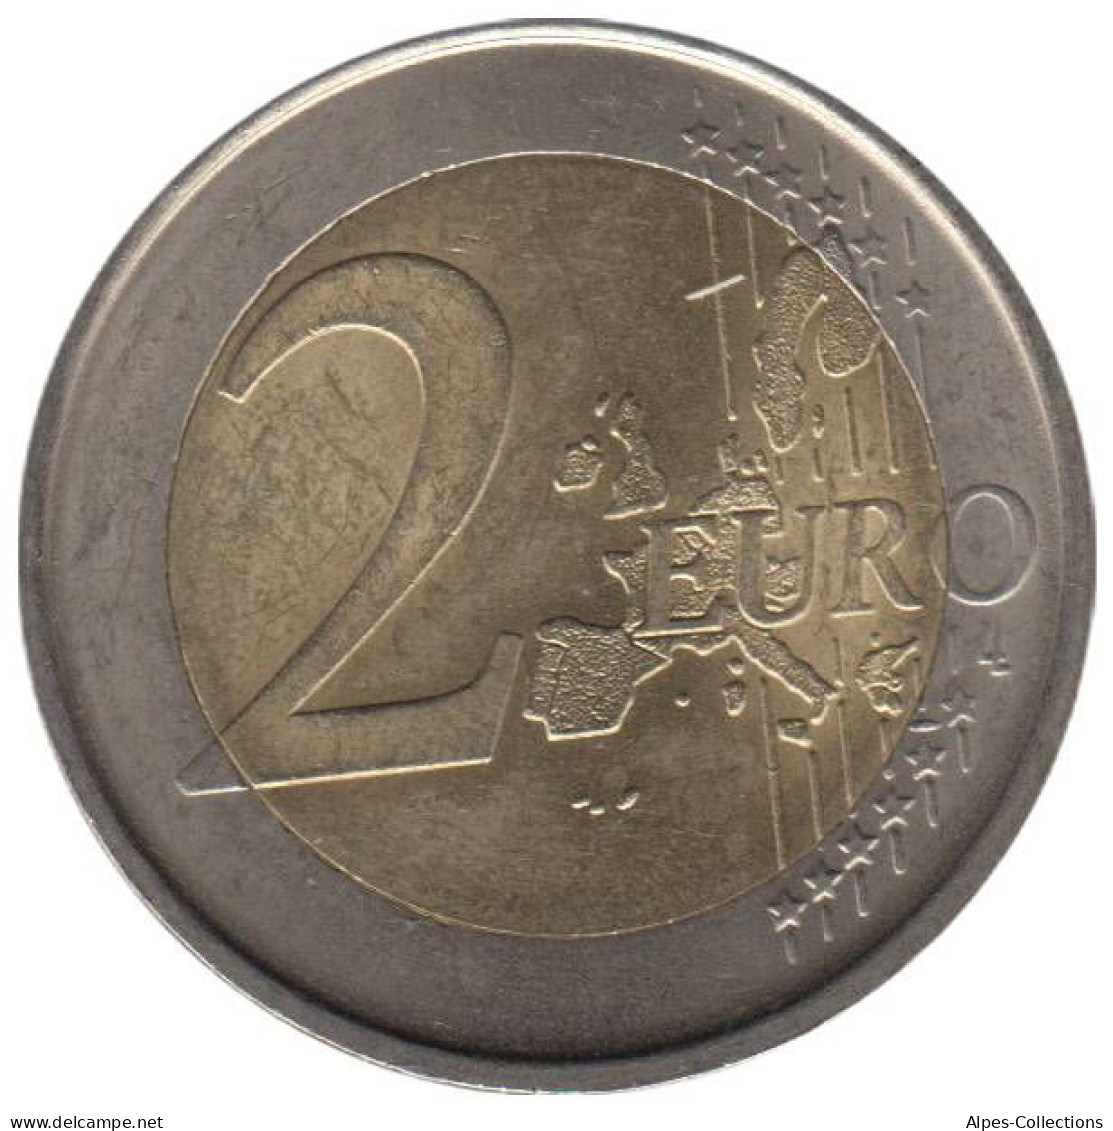 ES20006.1 - ESPAGNE - 2 Euros - 2006 - Spagna